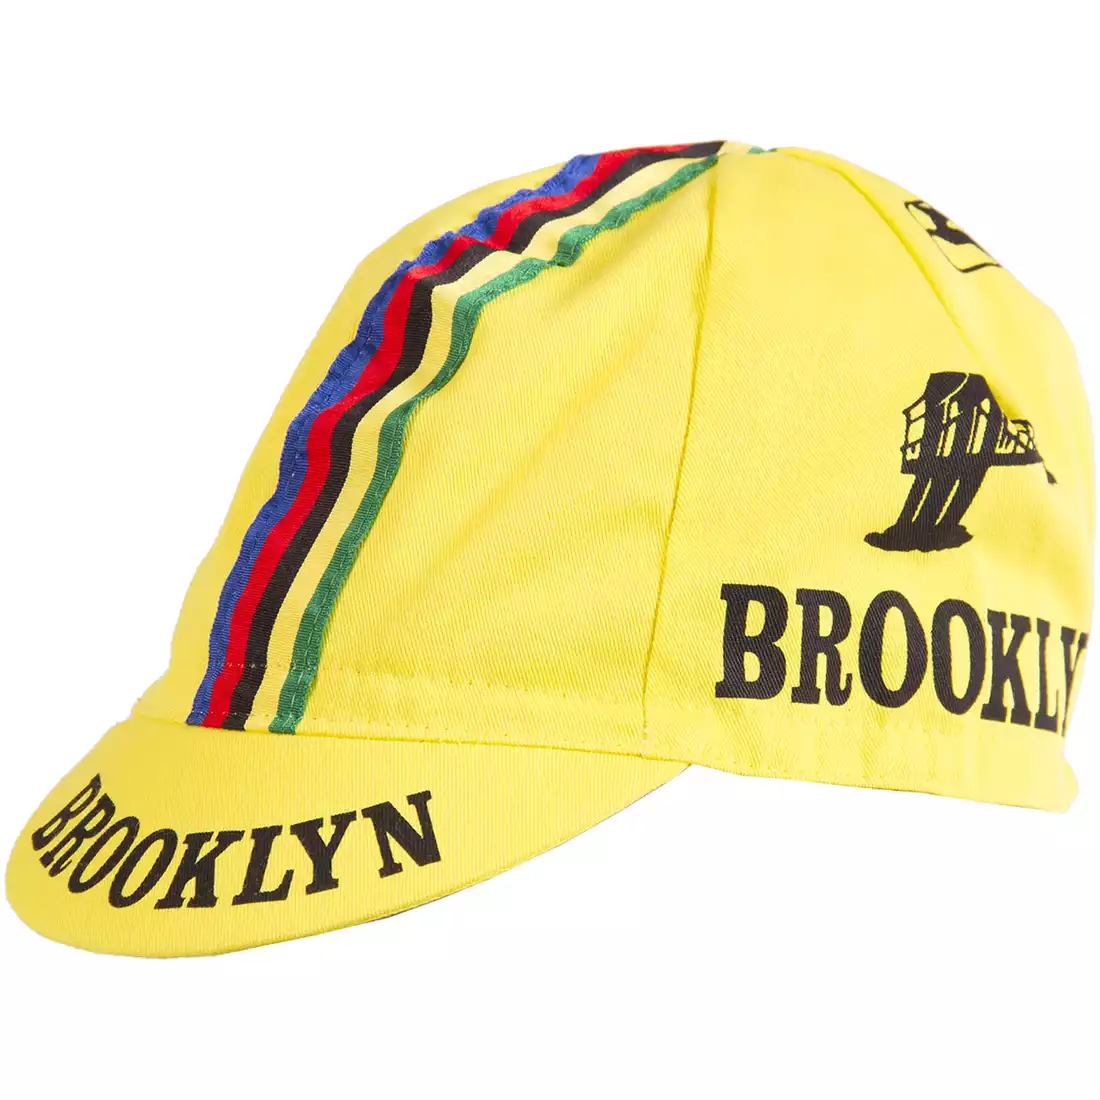 GIORDANA SS18 czapeczka kolarska - Brooklyn -  Yellow w/ Stripe tape  GI-S6-COCA-BROK-YELL one size